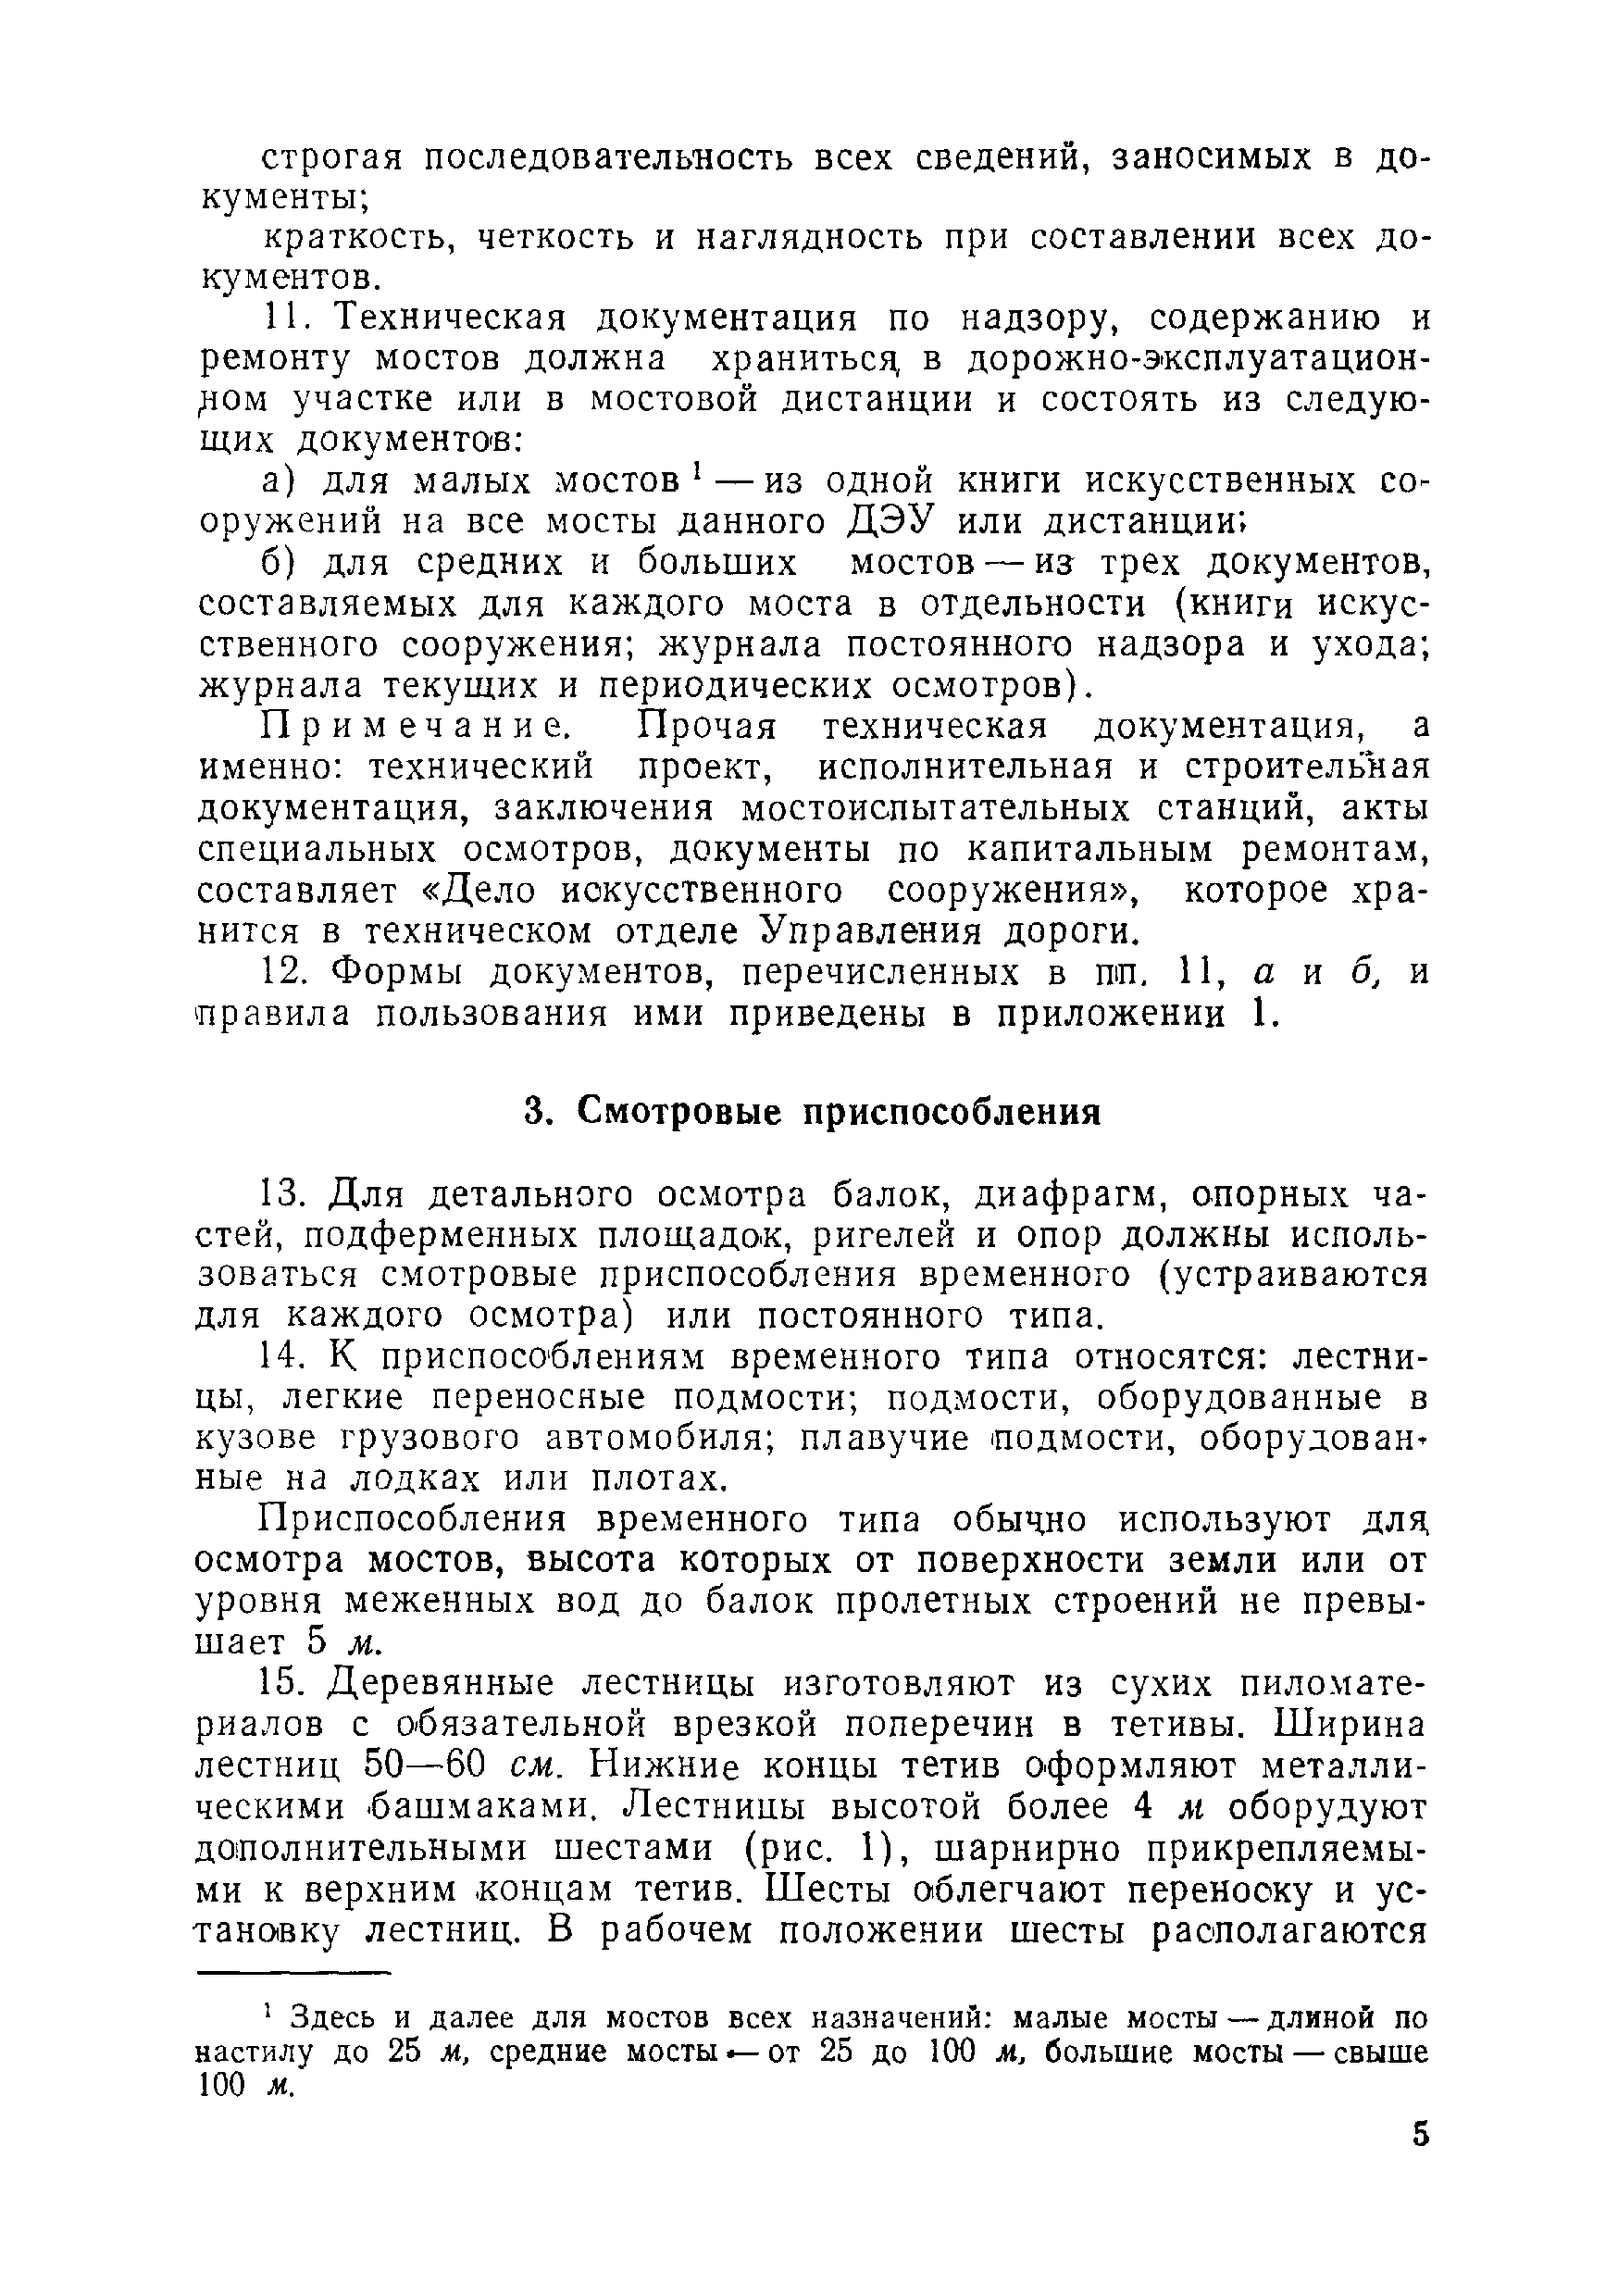 ВСН 1-69/Минавтодор РСФСР